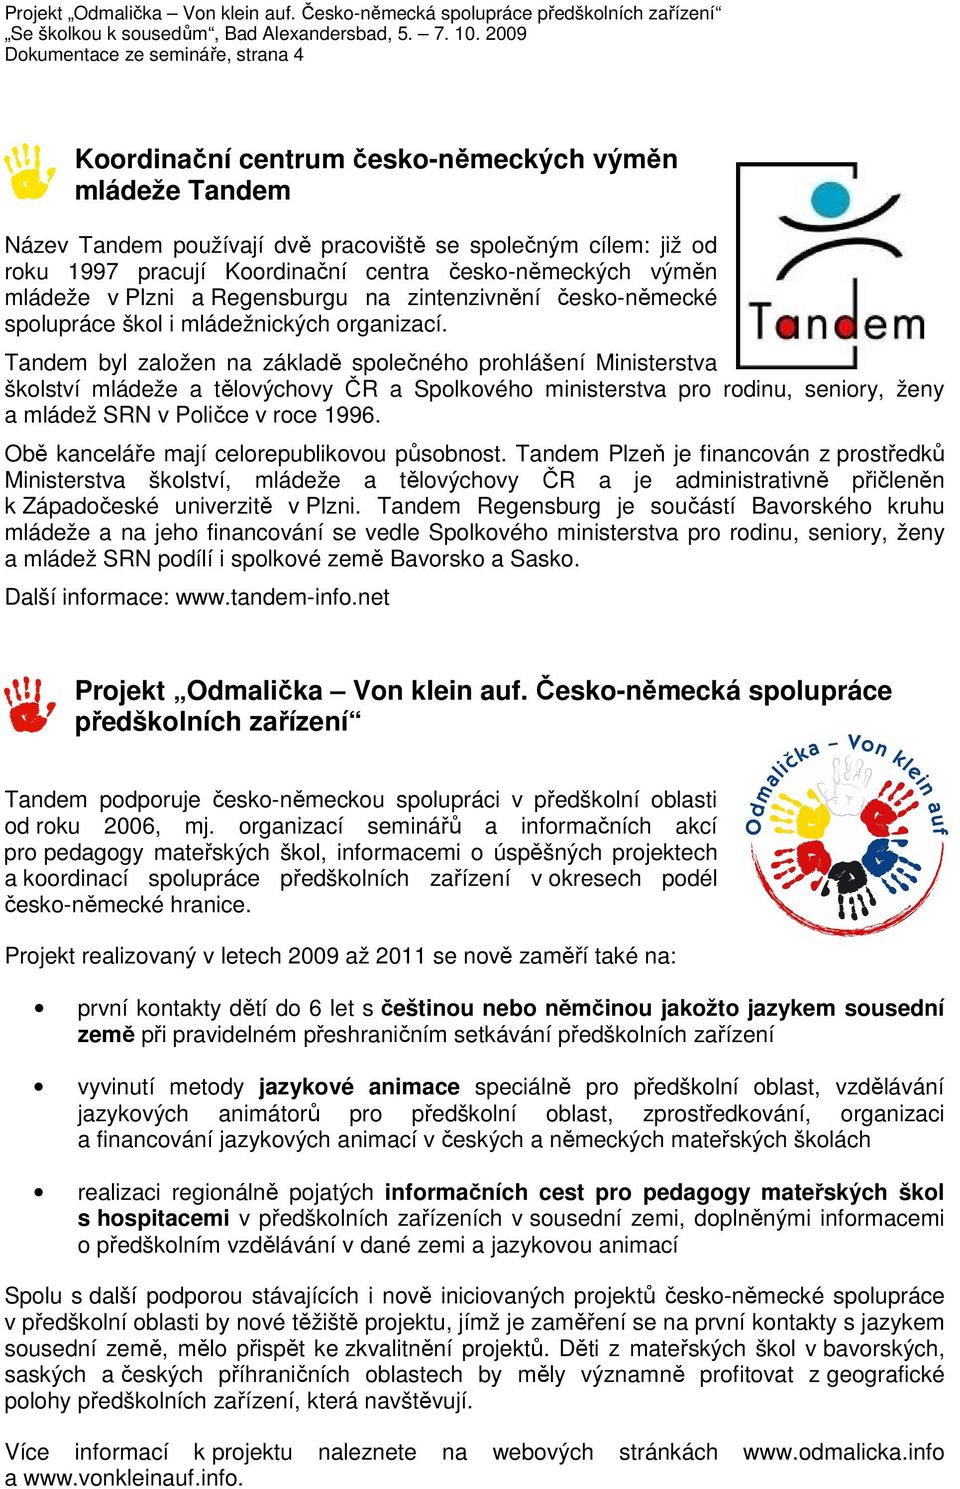 Tandem byl založen na základě společného prohlášení Ministerstva školství mládeže a tělovýchovy ČR a Spolkového ministerstva pro rodinu, seniory, ženy a mládež SRN v Poličce v roce 1996.